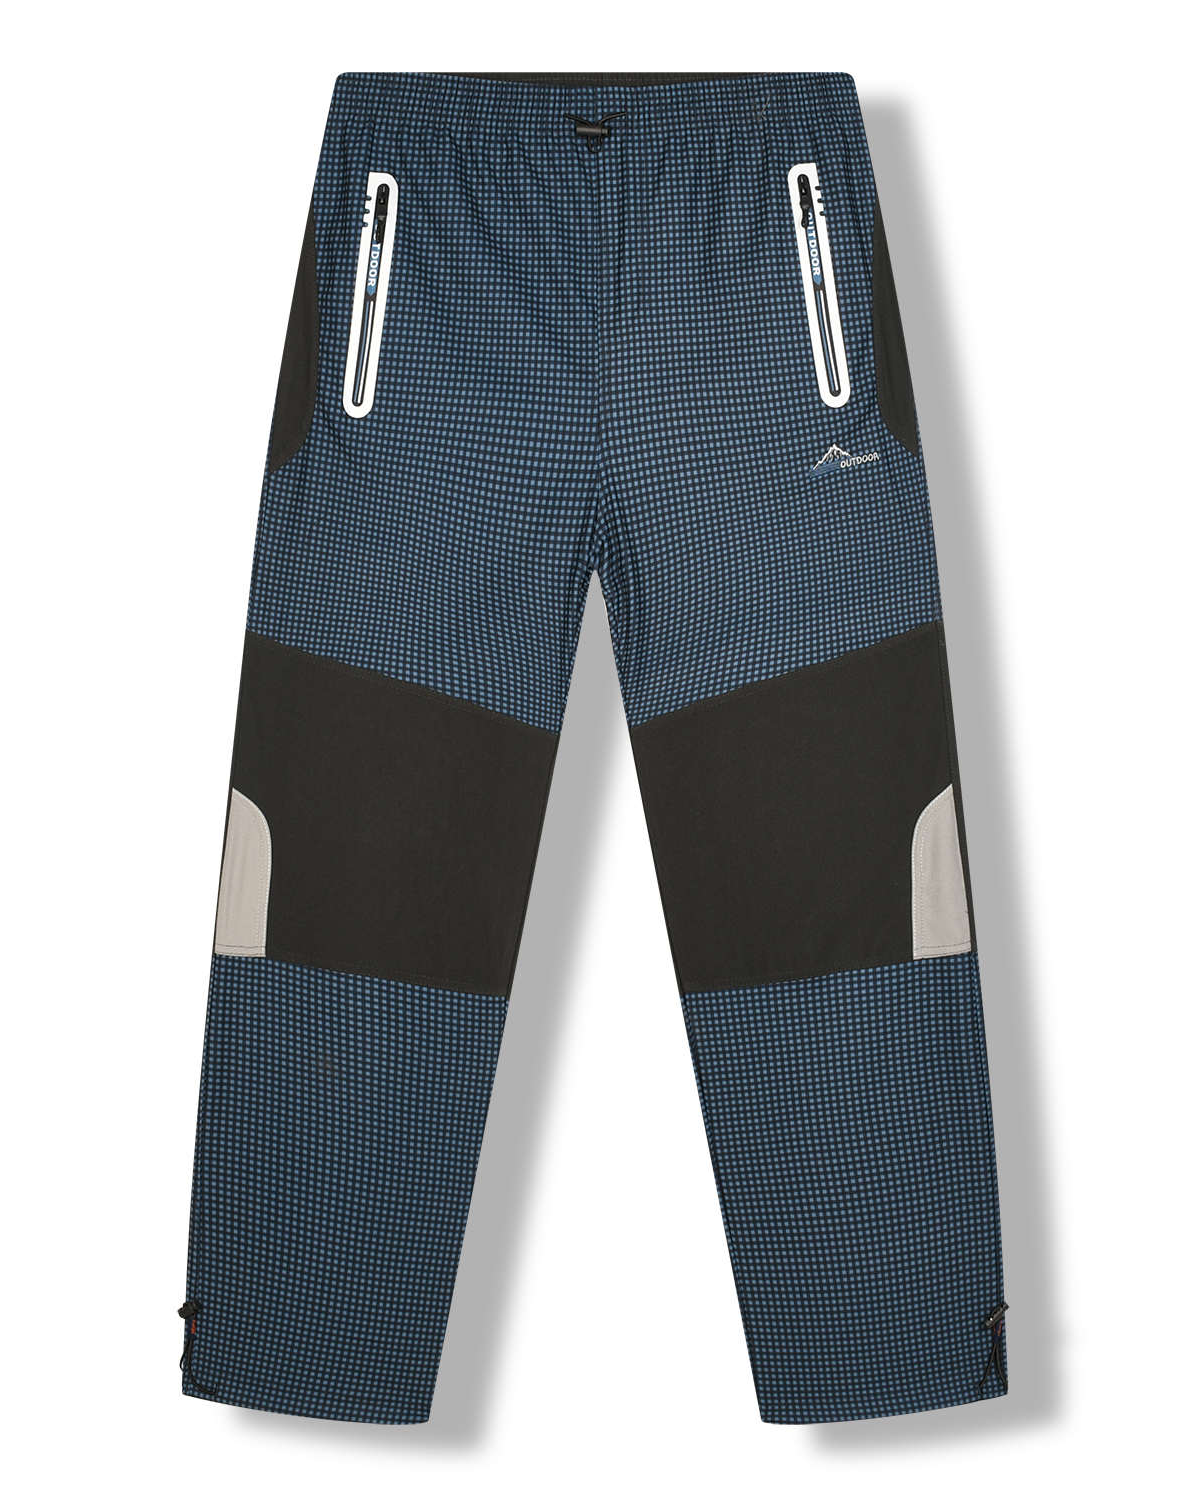 Levně Pánské outdoorové kalhoty - KUGO G8551, petrol Barva: Petrol